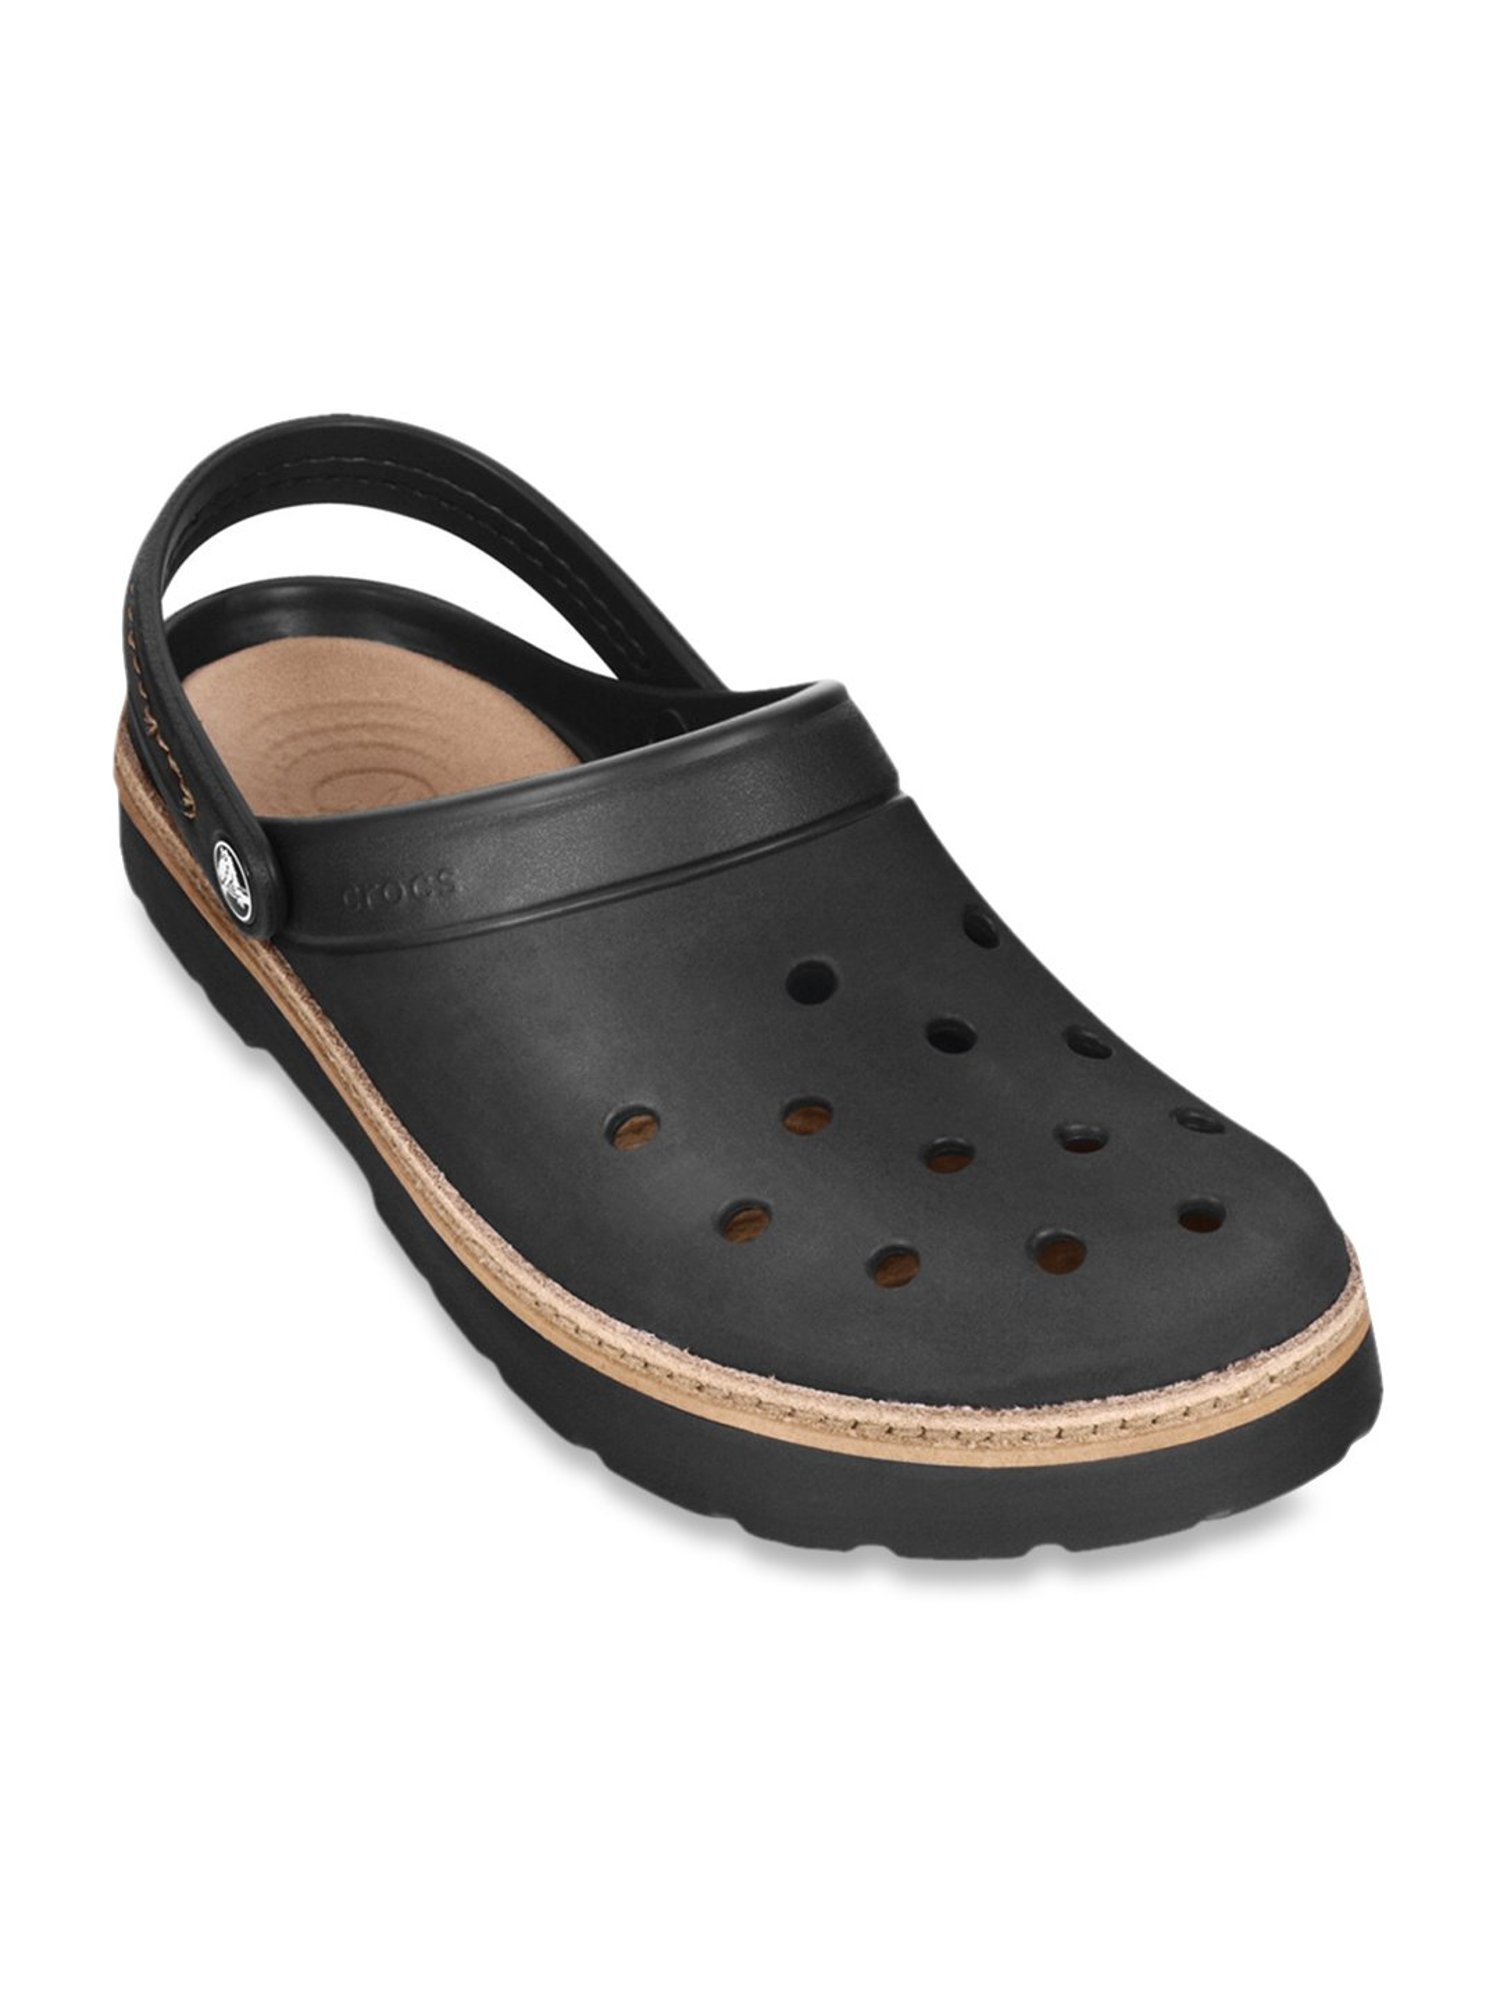 crocs cobbler clogs